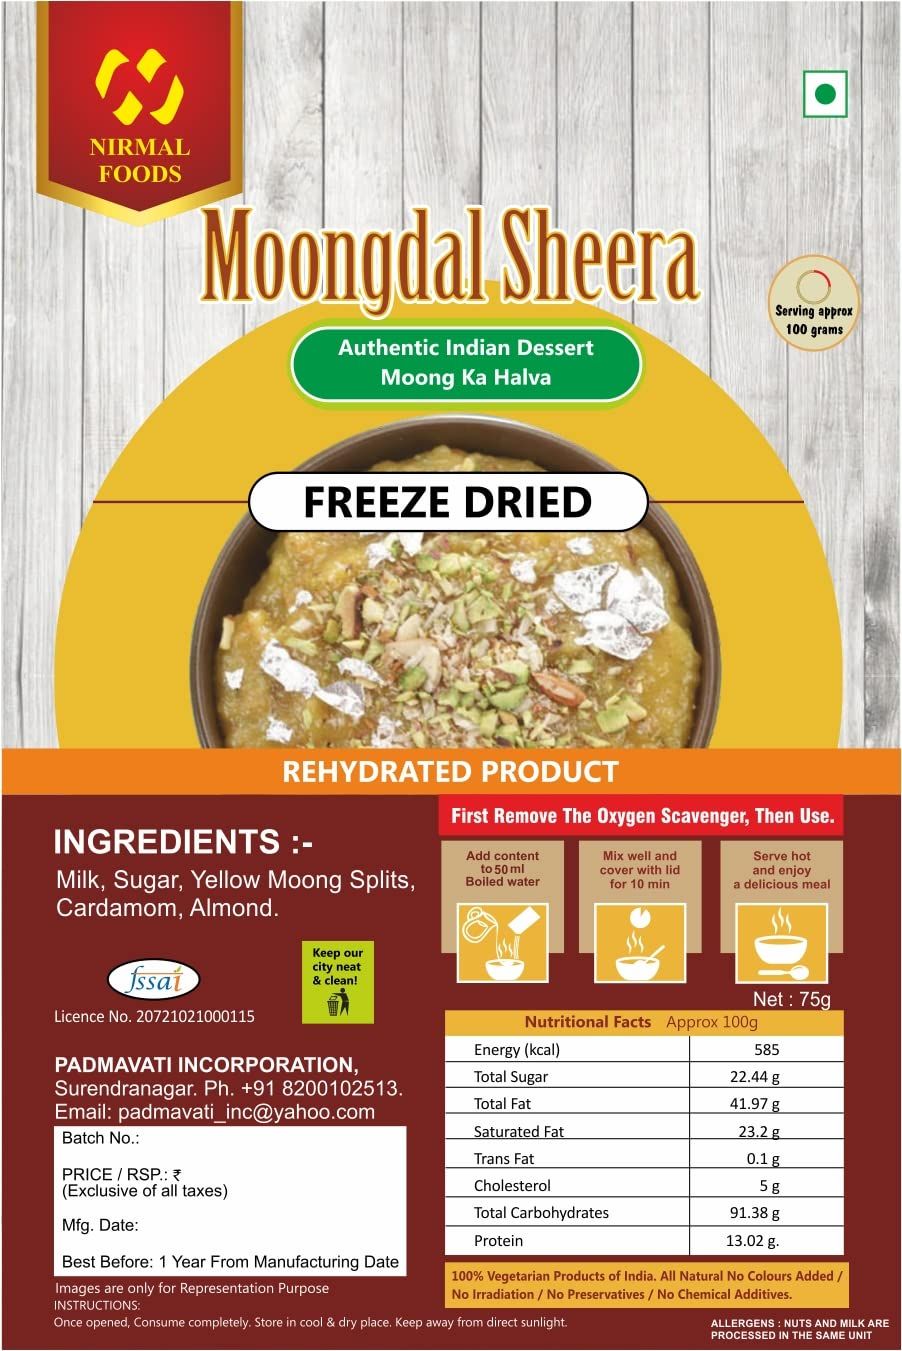 Nirmal Foods Moong Dal Sheera Image